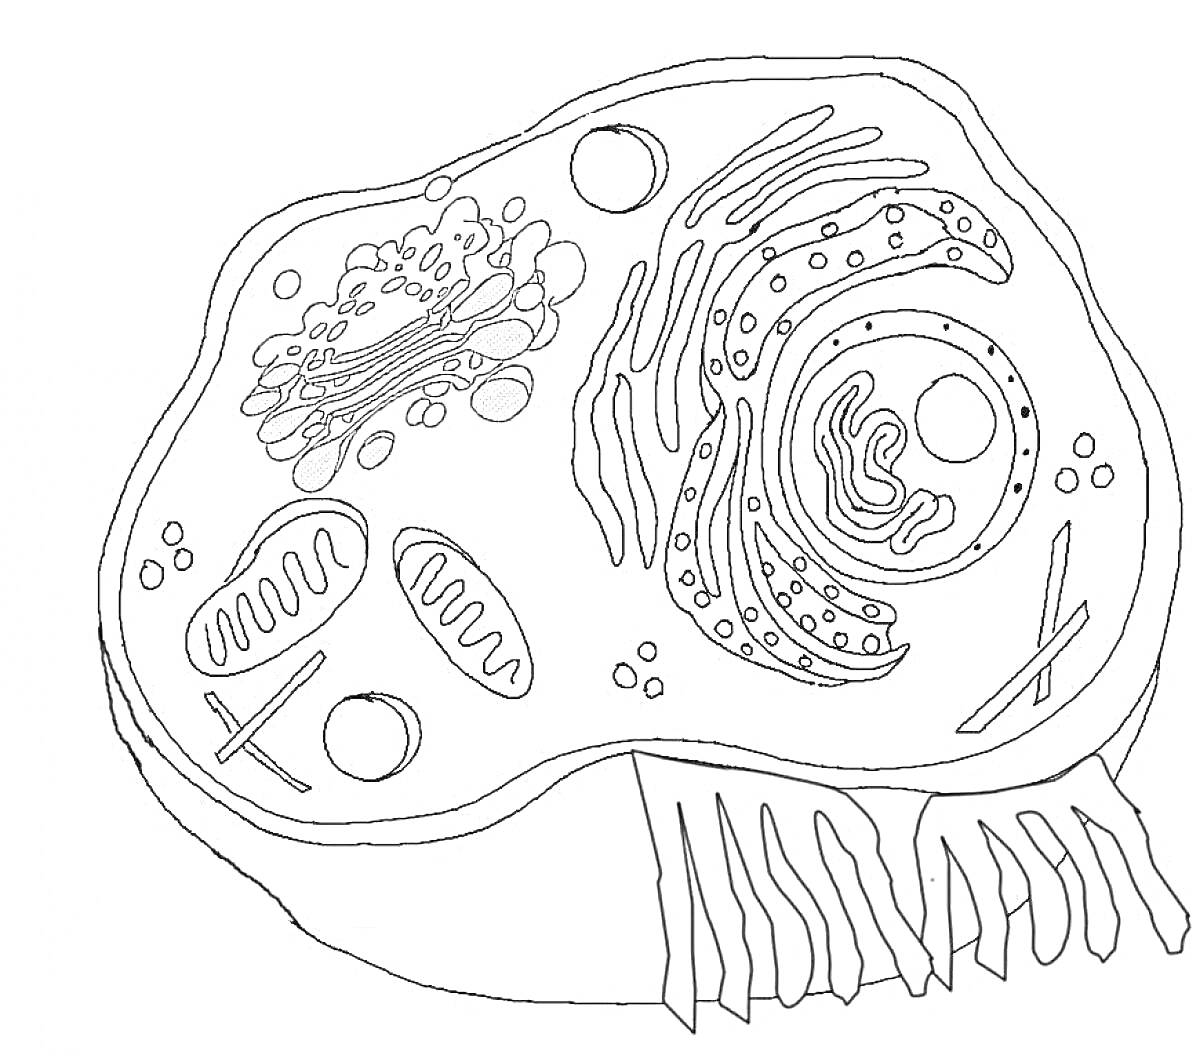 Клетка с органеллами, включает ядро, митохондрии, аппарат Гольджи, эндоплазматическую сеть, рибосомы, цитоплазму, клеточную мембрану